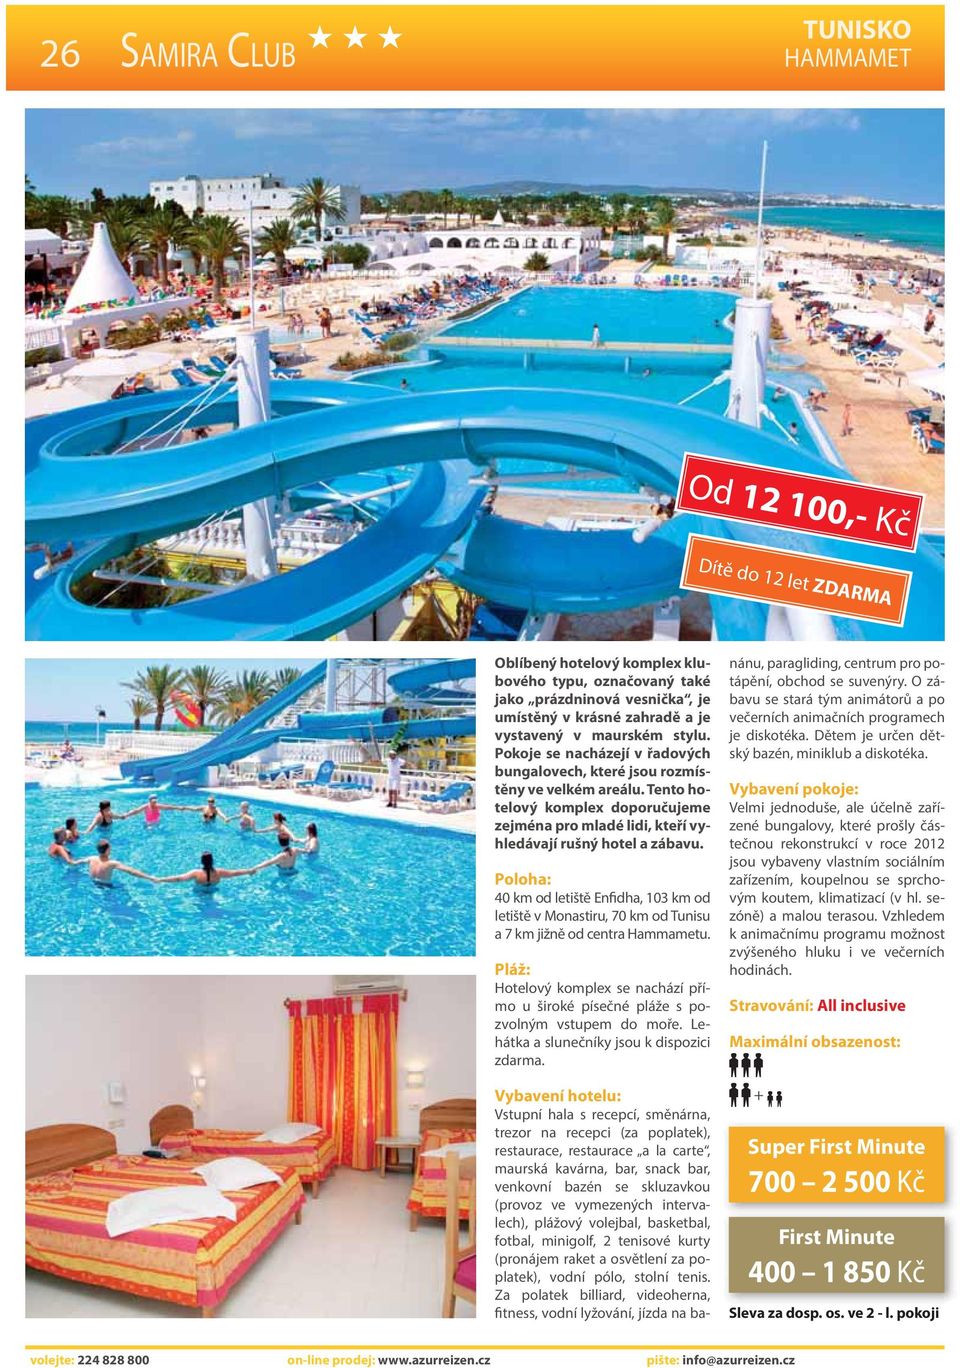 40 km od letiště Enfidha, 103 km od letiště v Monastiru, 70 km od Tunisu a 7 km jižně od centra Hammametu. Hotelový komplex se nachází přímo u široké písečné pláže s pozvolným vstupem do moře.